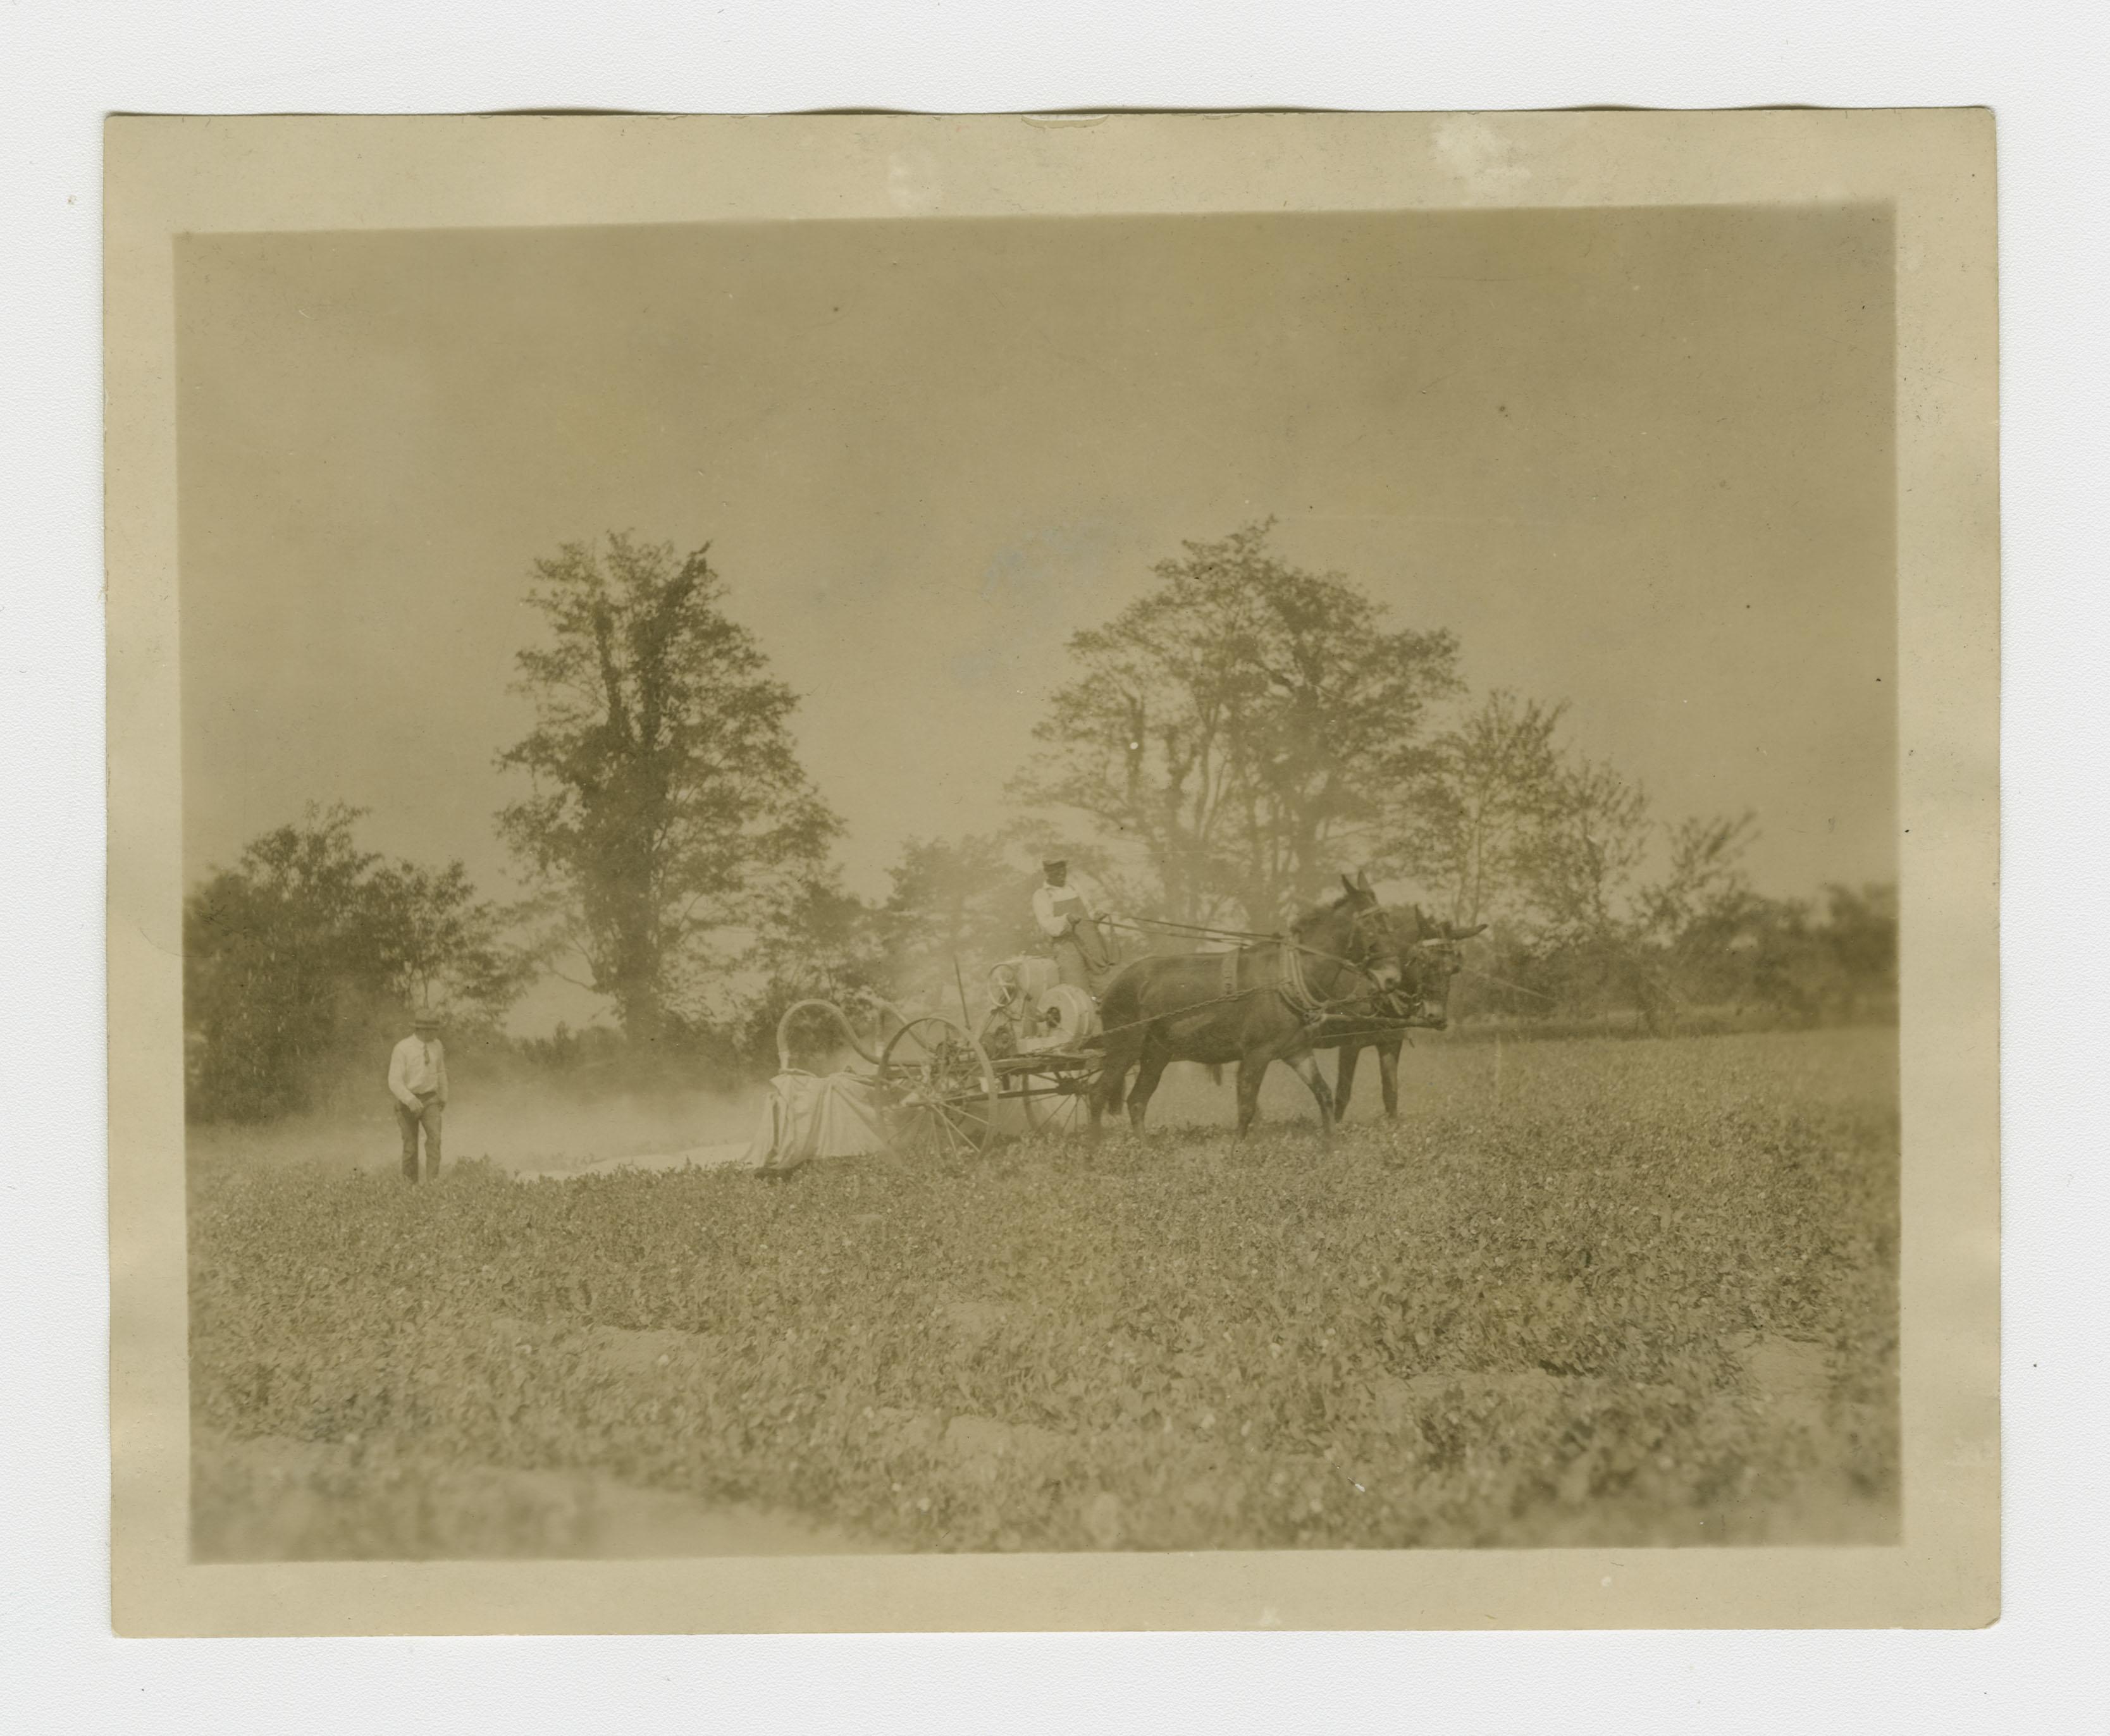 Black man sat atop a horse-drawn cart, dusting crops while a white man follows behind